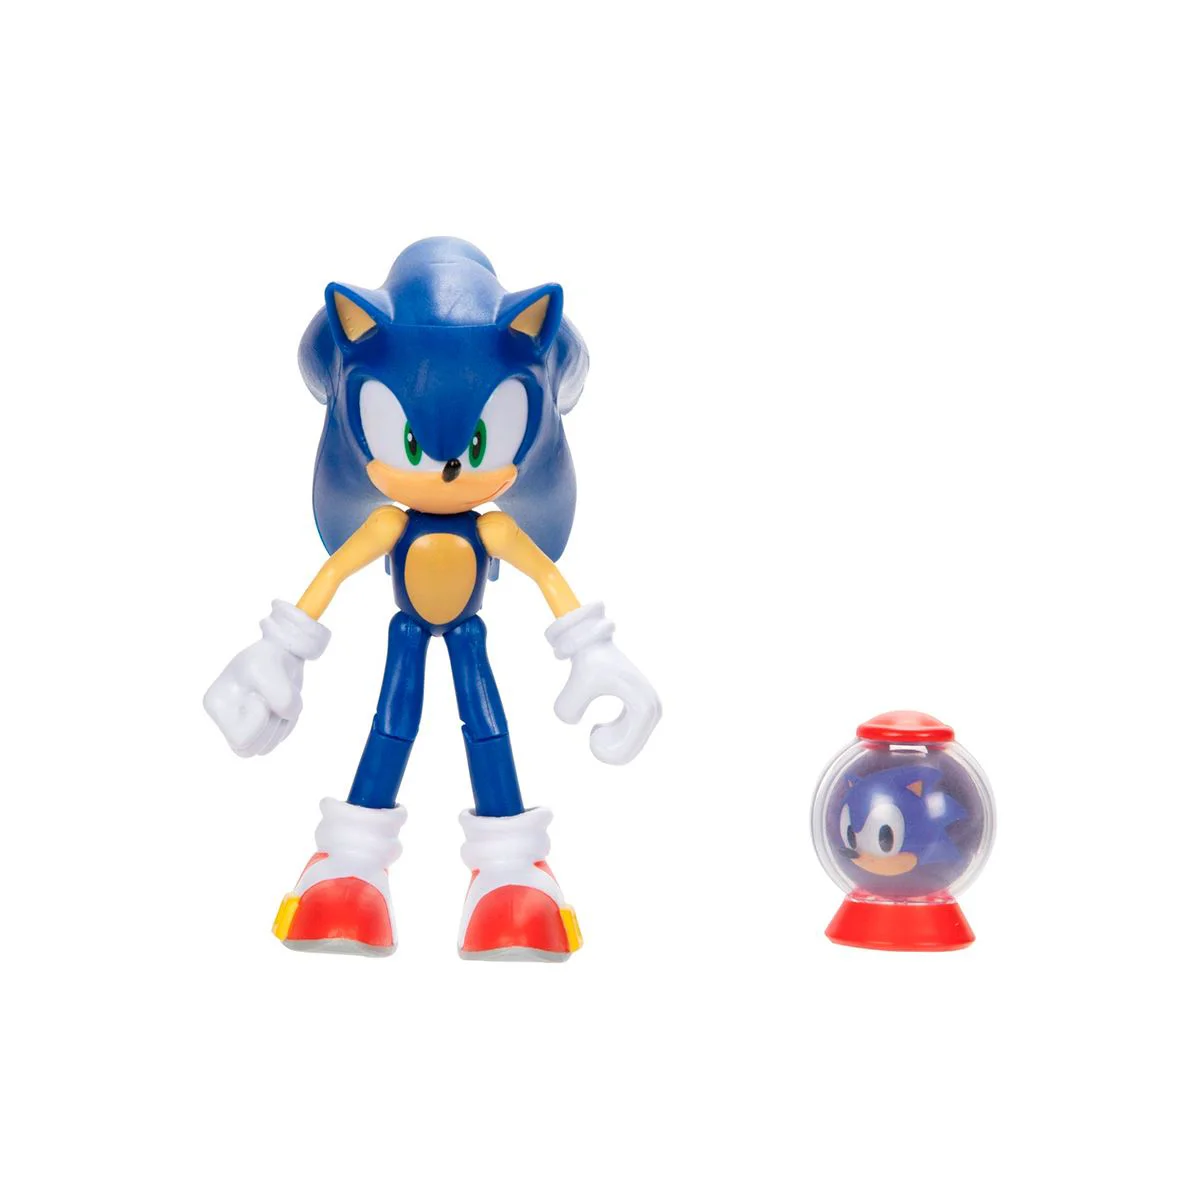 Игровая фигурка Sonic the Hedgehog Соник, 10 см (с артикуляцией)